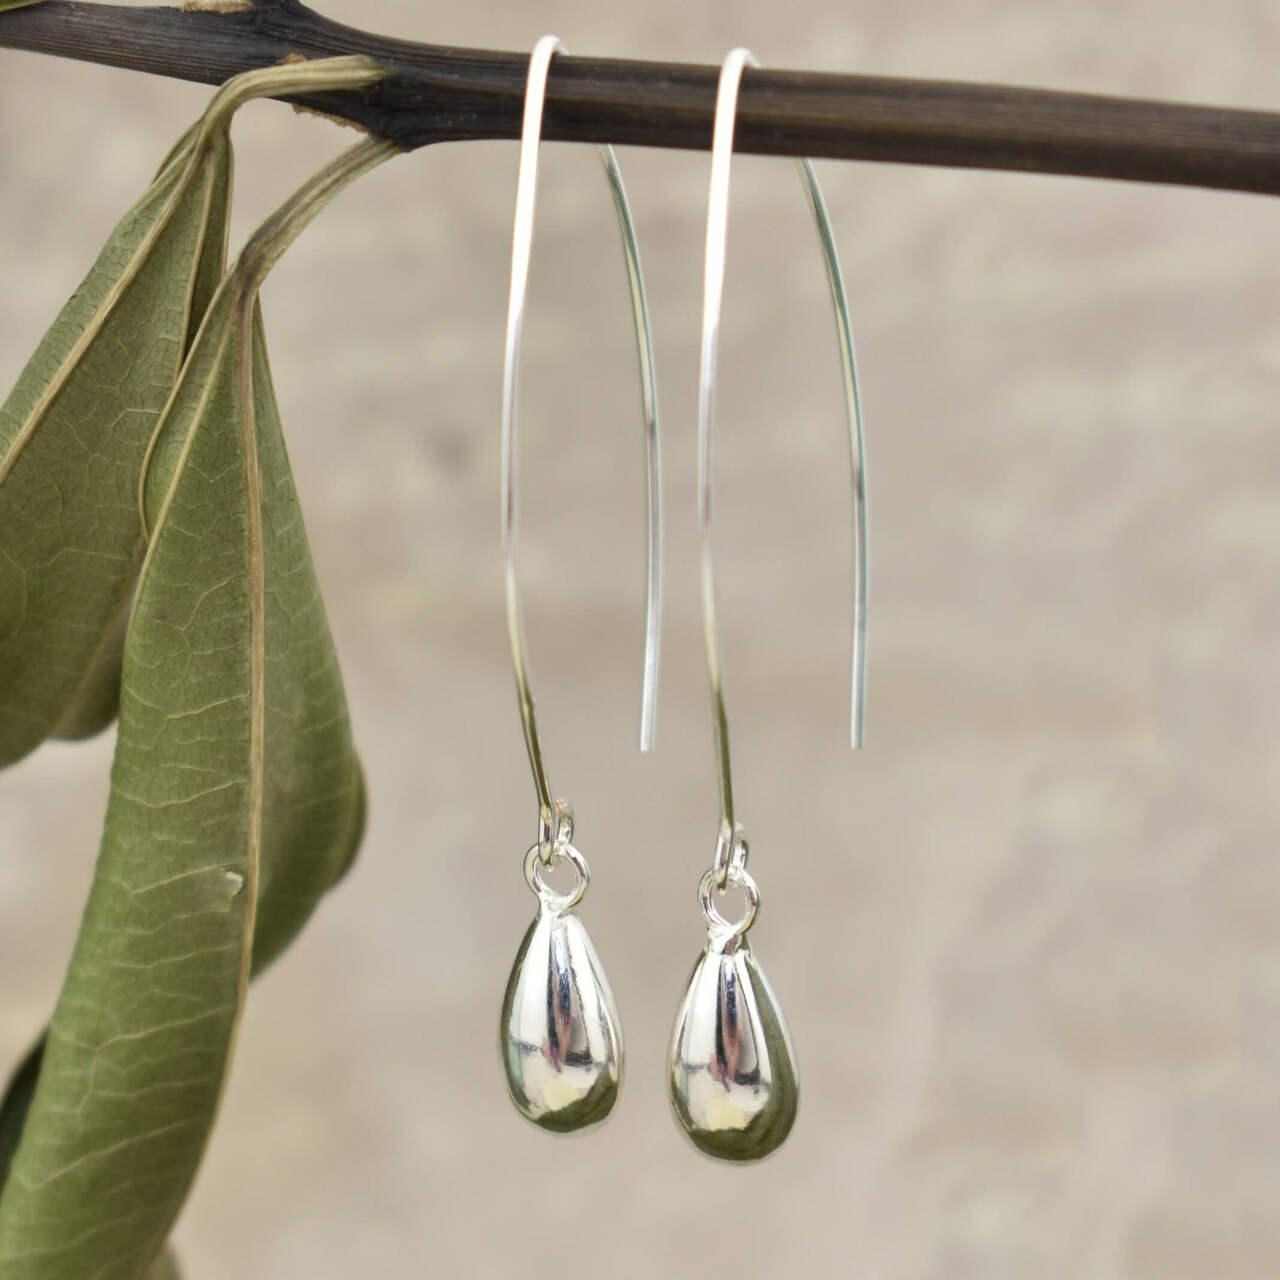 handcrafted .925 sterling silver teardrop earrings on a V hook